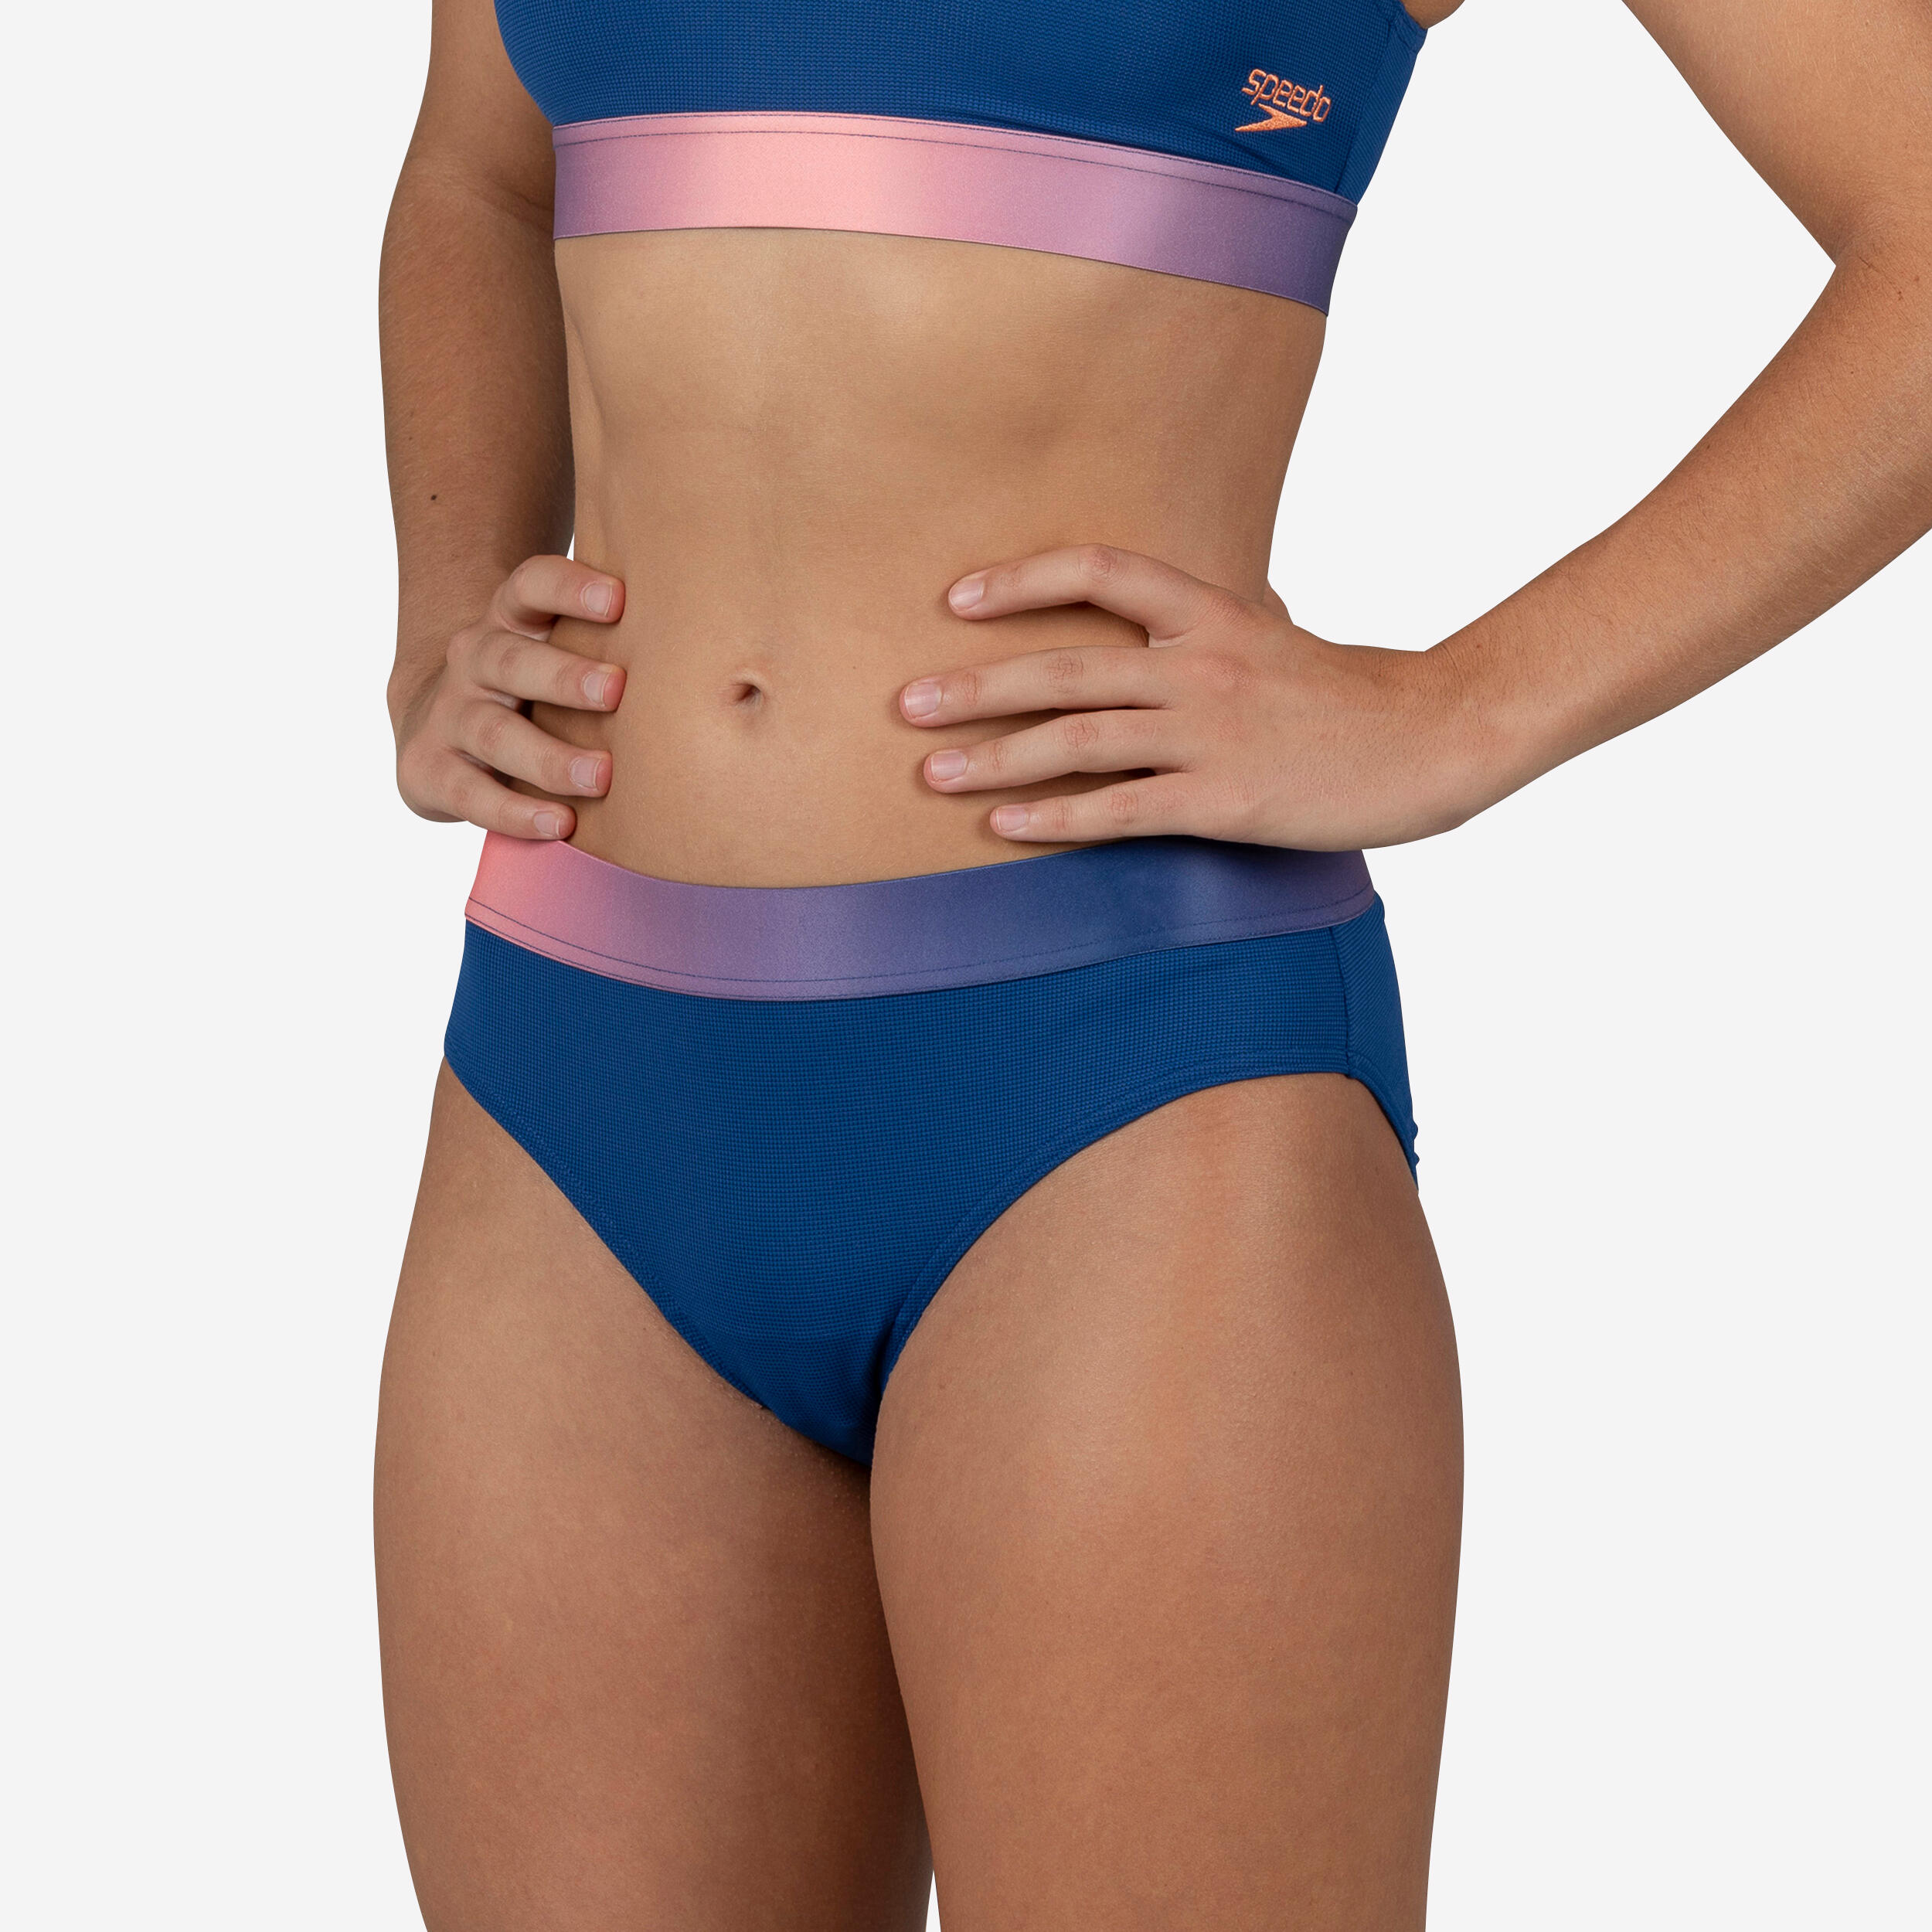 bas de maillot de bain natation femme speedo lilac corail - speedo